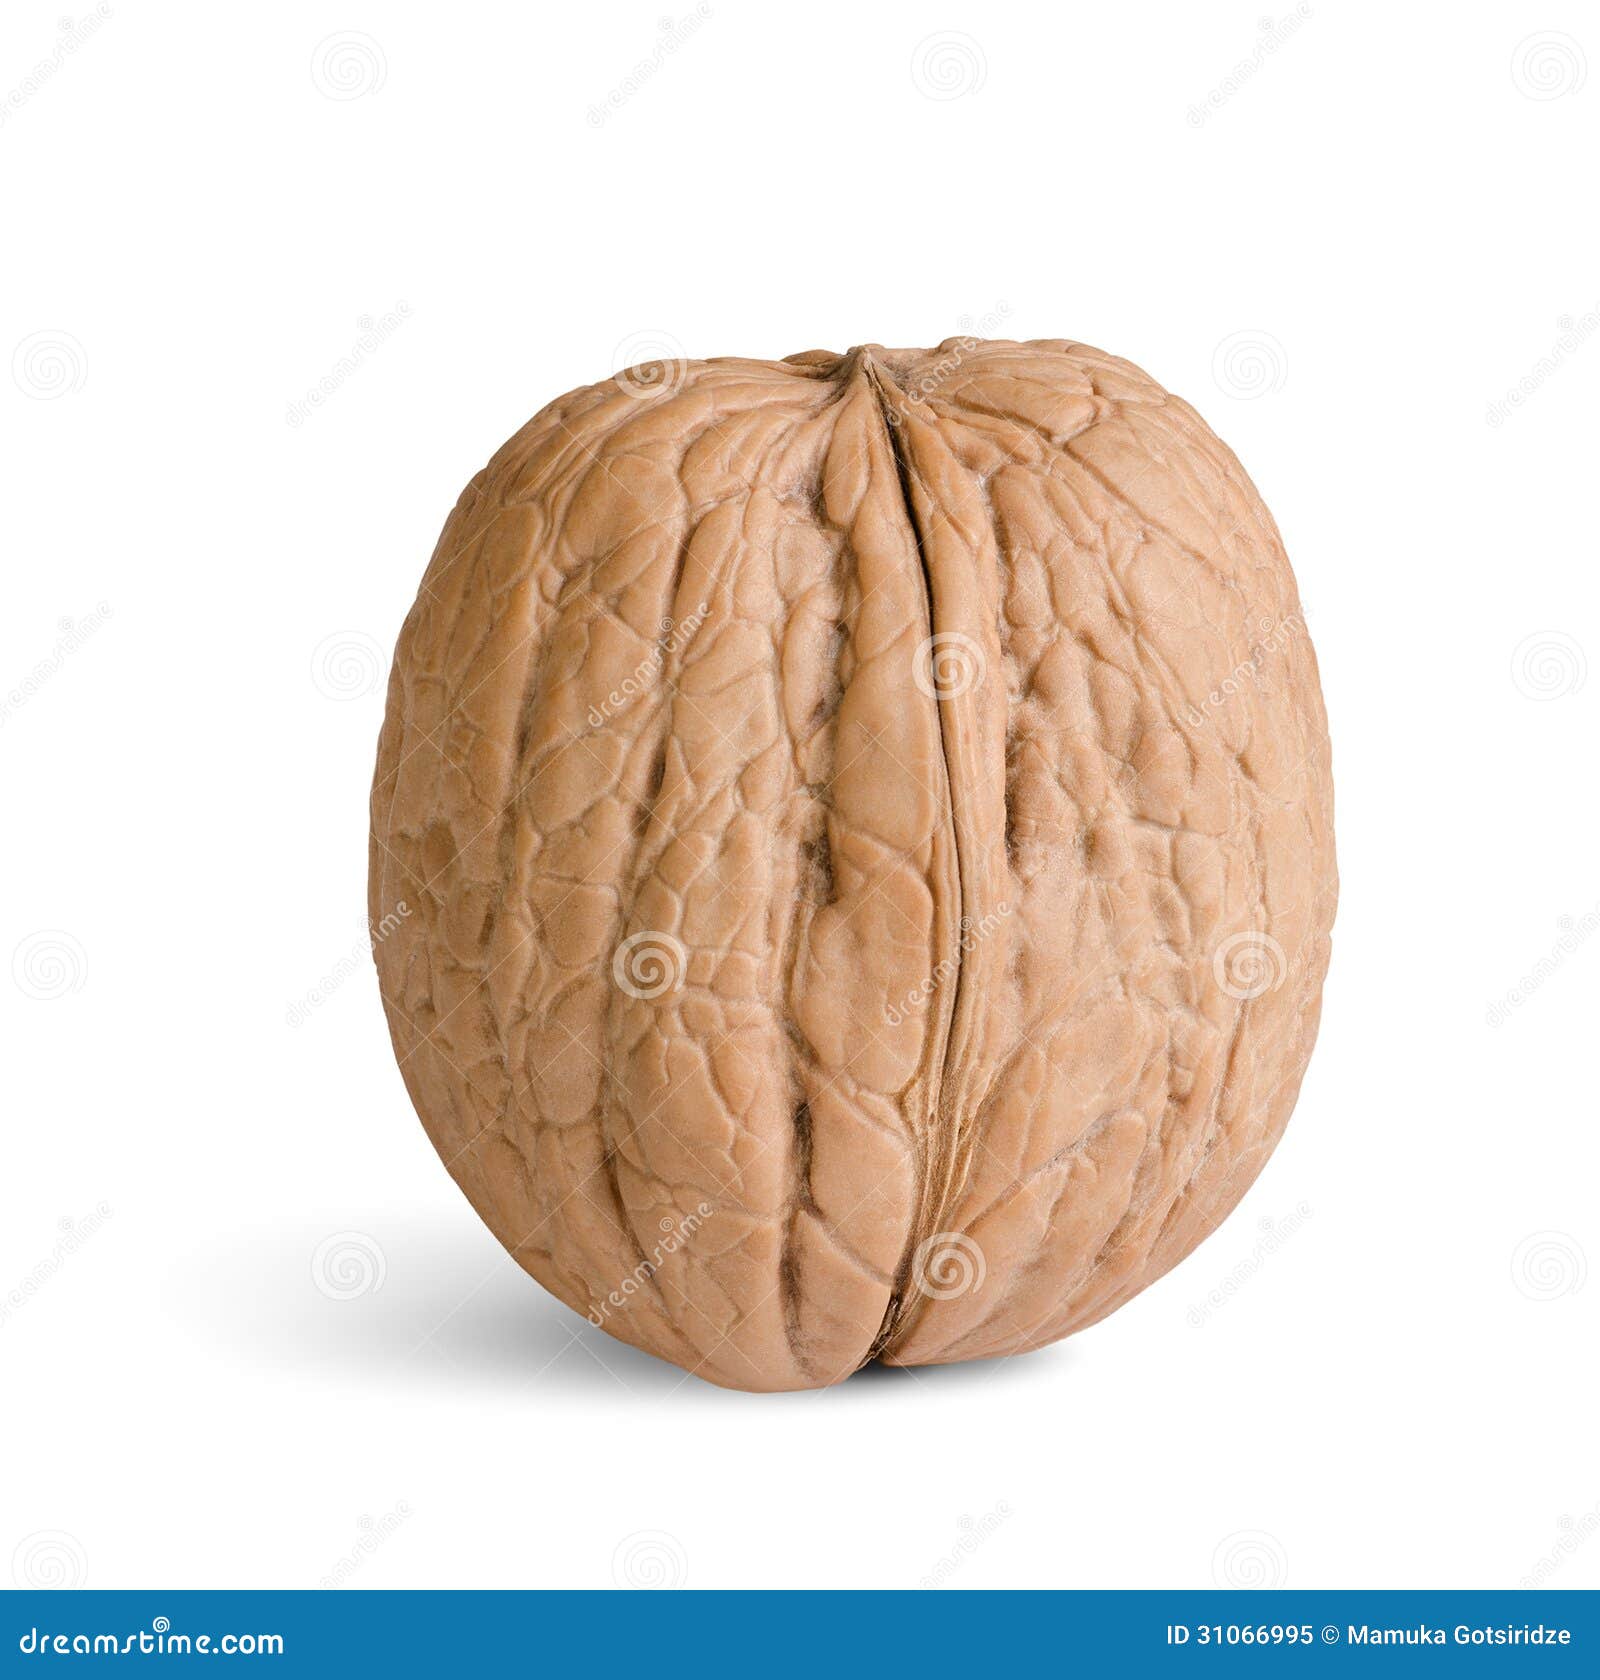 one walnut